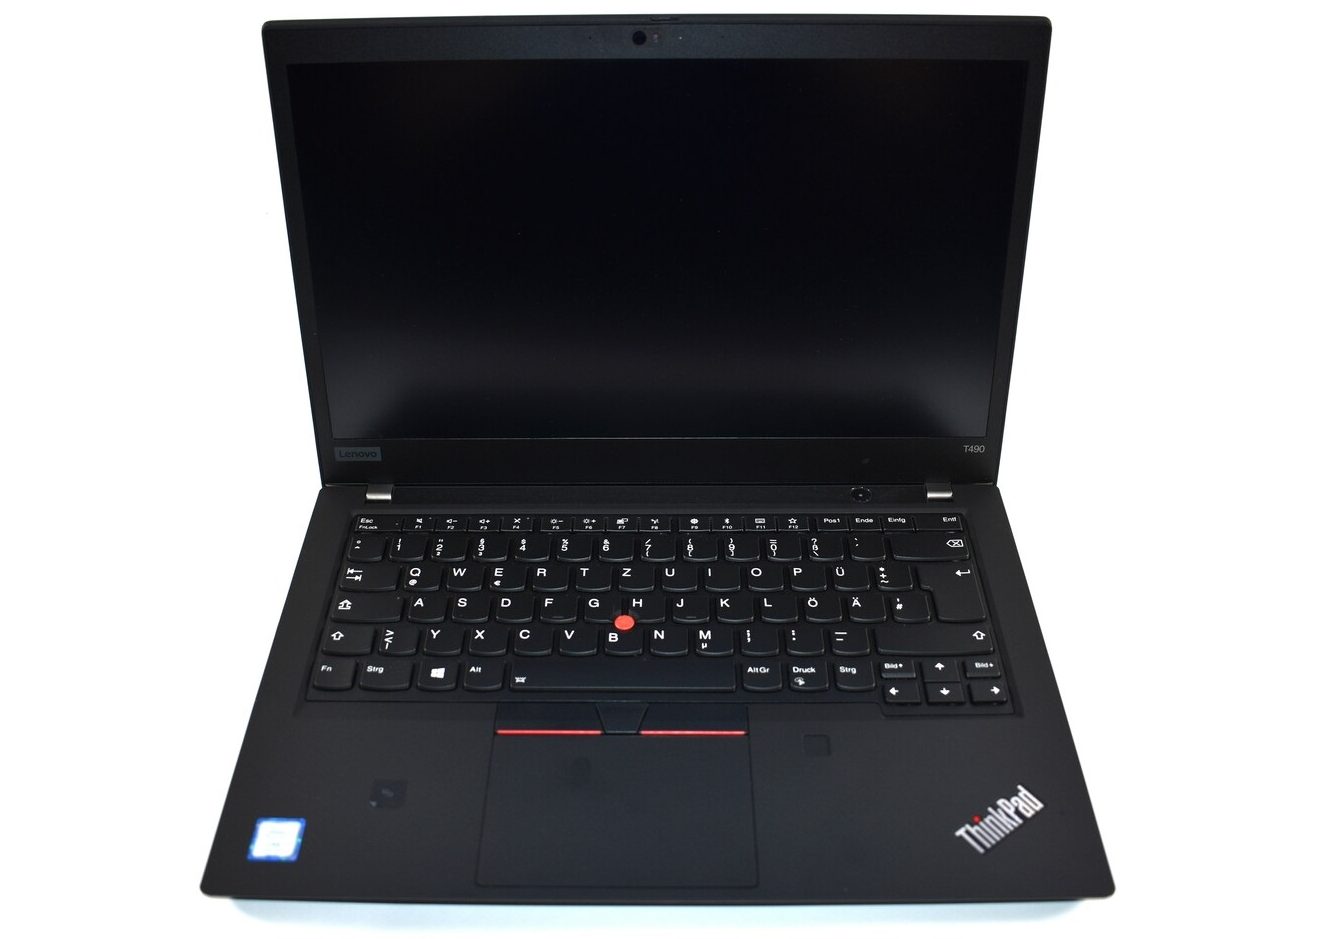 Đánh giá laptop Lenovo ThinkPad T490: Vẫn là doanh nhân đẳng cấp, Chuyên trang tư vấn laptop